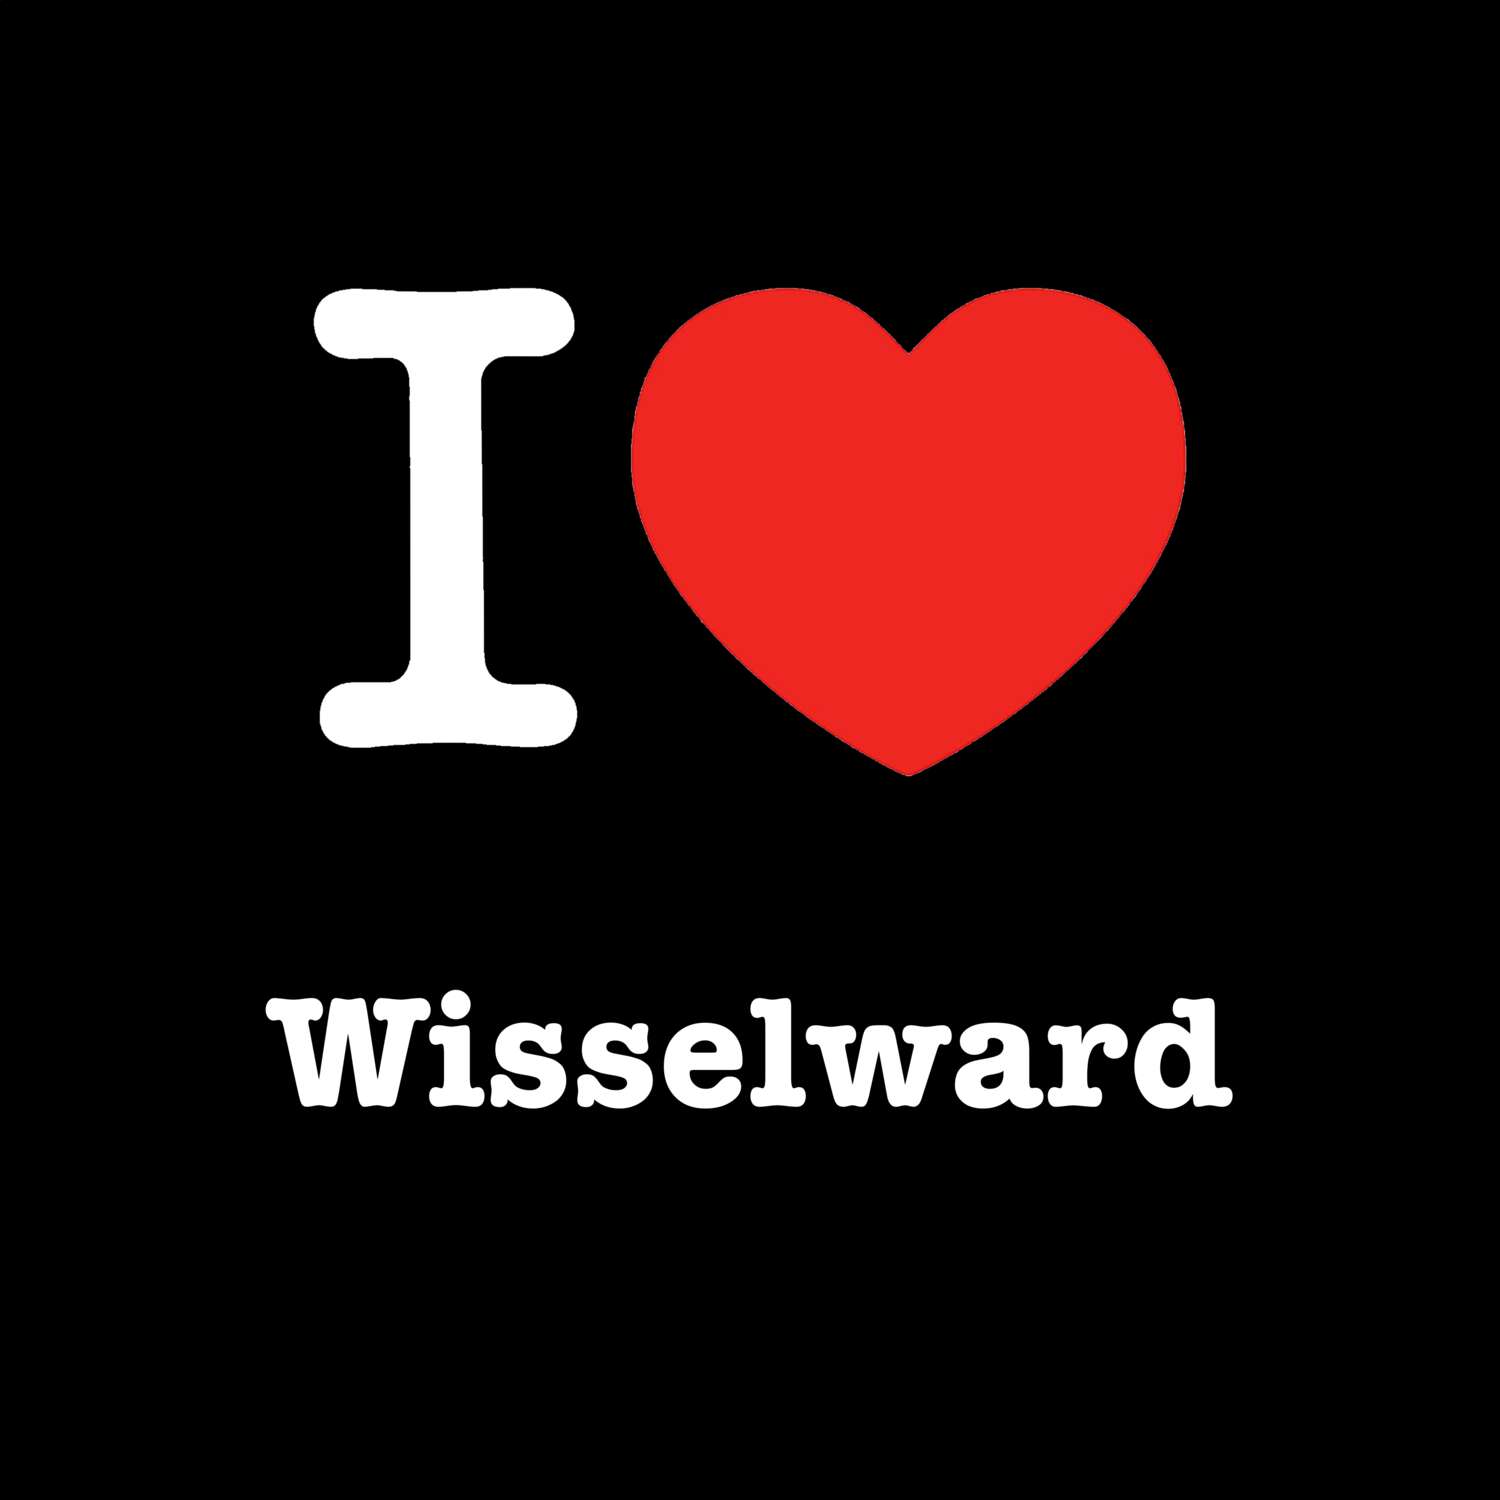 Wisselward T-Shirt »I love«